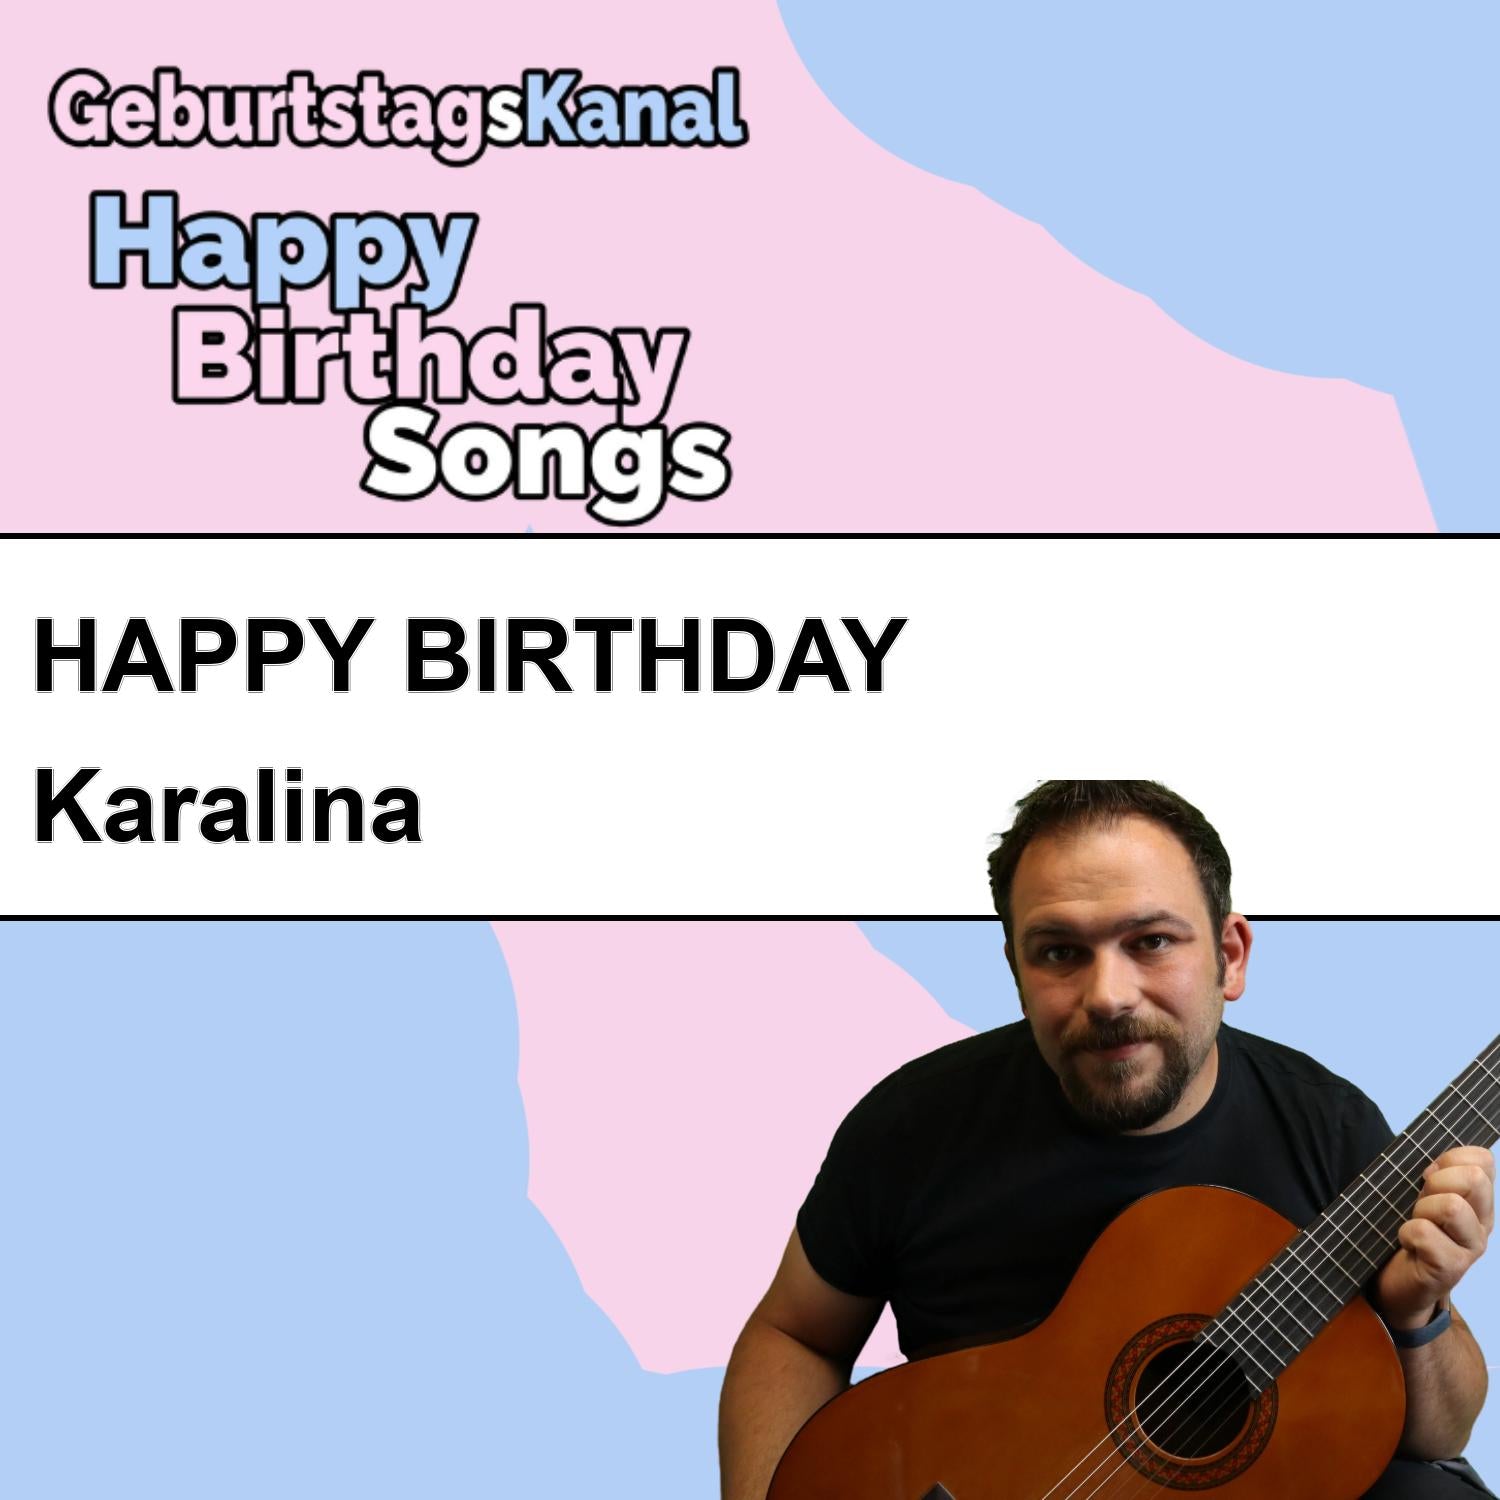 Produktbild Happy Birthday to you Karalina mit Wunschgrußbotschaft